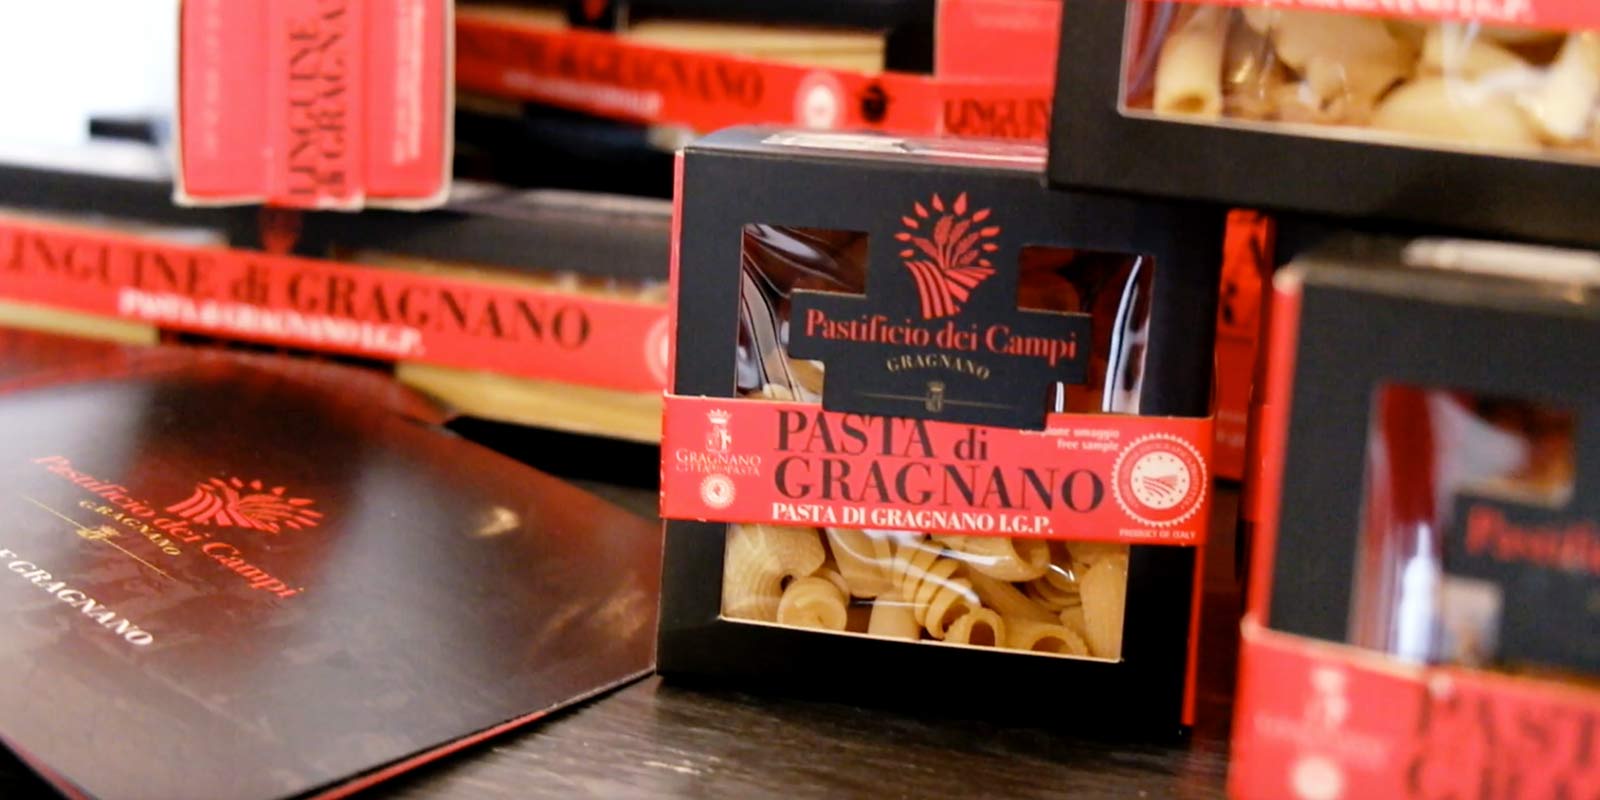 Pastifico dei Campi - Pasta di Gragnano IGP Pastificio dei Campi tuottaa italialaisia klassikoita ja alkuperaisia luomuksia. Pasta on valmistettu 100 % italialaisesta durumvehnajauhosta ja suulakepuristettu pronssimuotteja kayttaen.